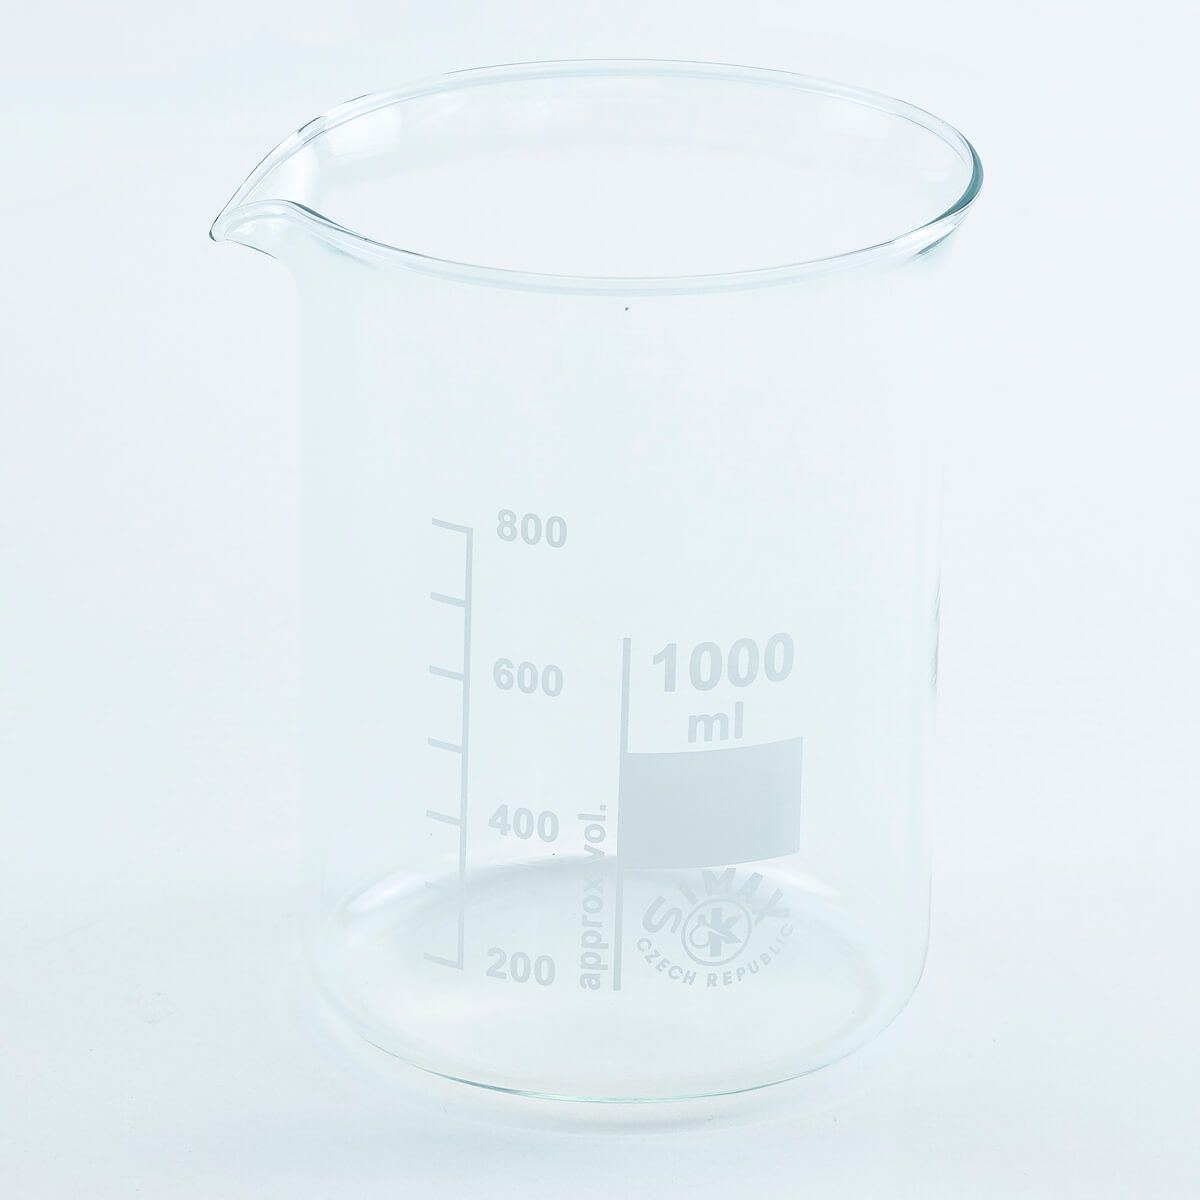 Vaso medidor de cristal 1.000 ml